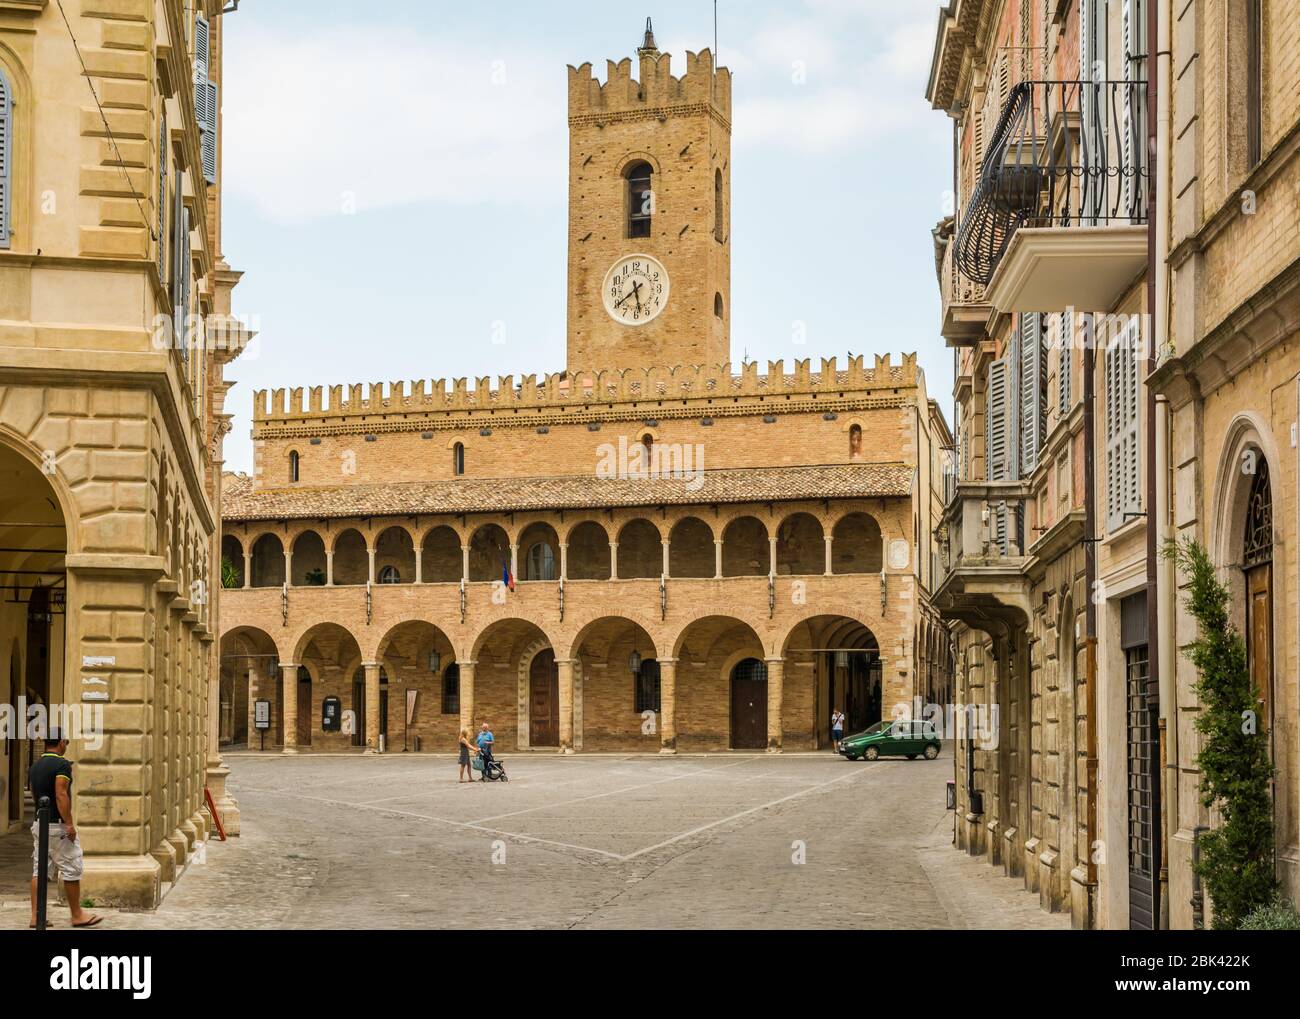 Die dreieckige hauptplatz von Offida Village, eines der schönsten Beispiele der bürgerlichen Architektur des 15.. Jahrhunderts in der Region Marken - Italien Stockfoto